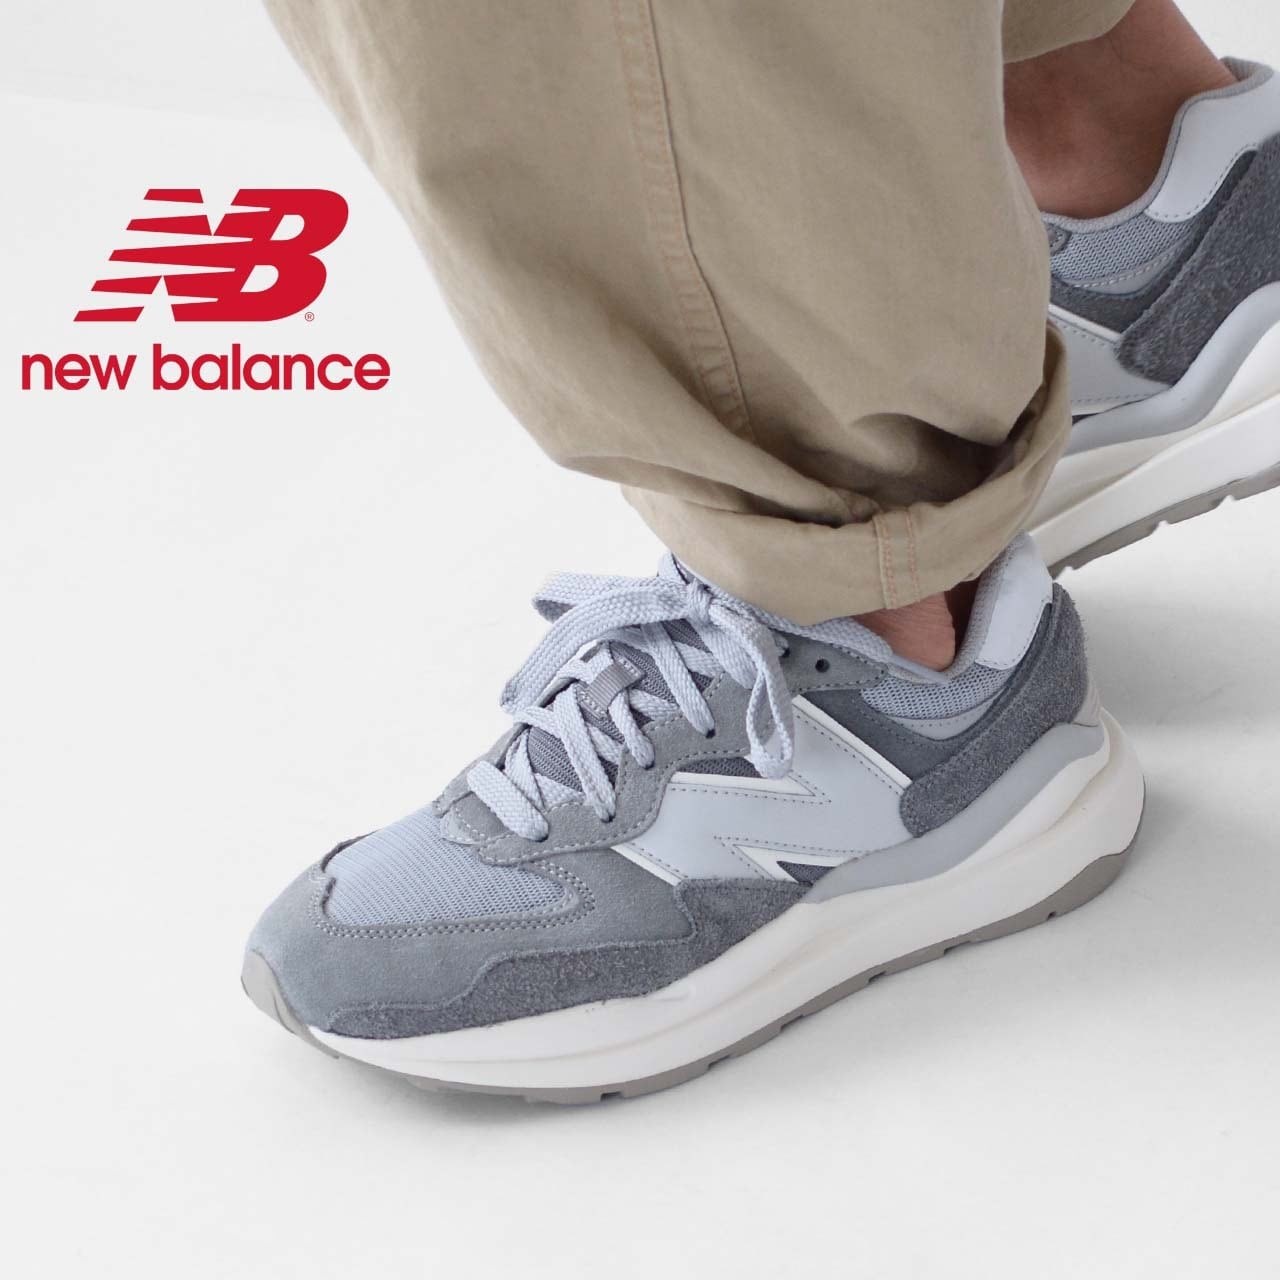 New Balance [ニューバランス] 57/40 PSG [M5740 PSG] スニーカー・正規販売店・デカロゴ MEN'S/LADY'S  [2022AW] | refalt online store